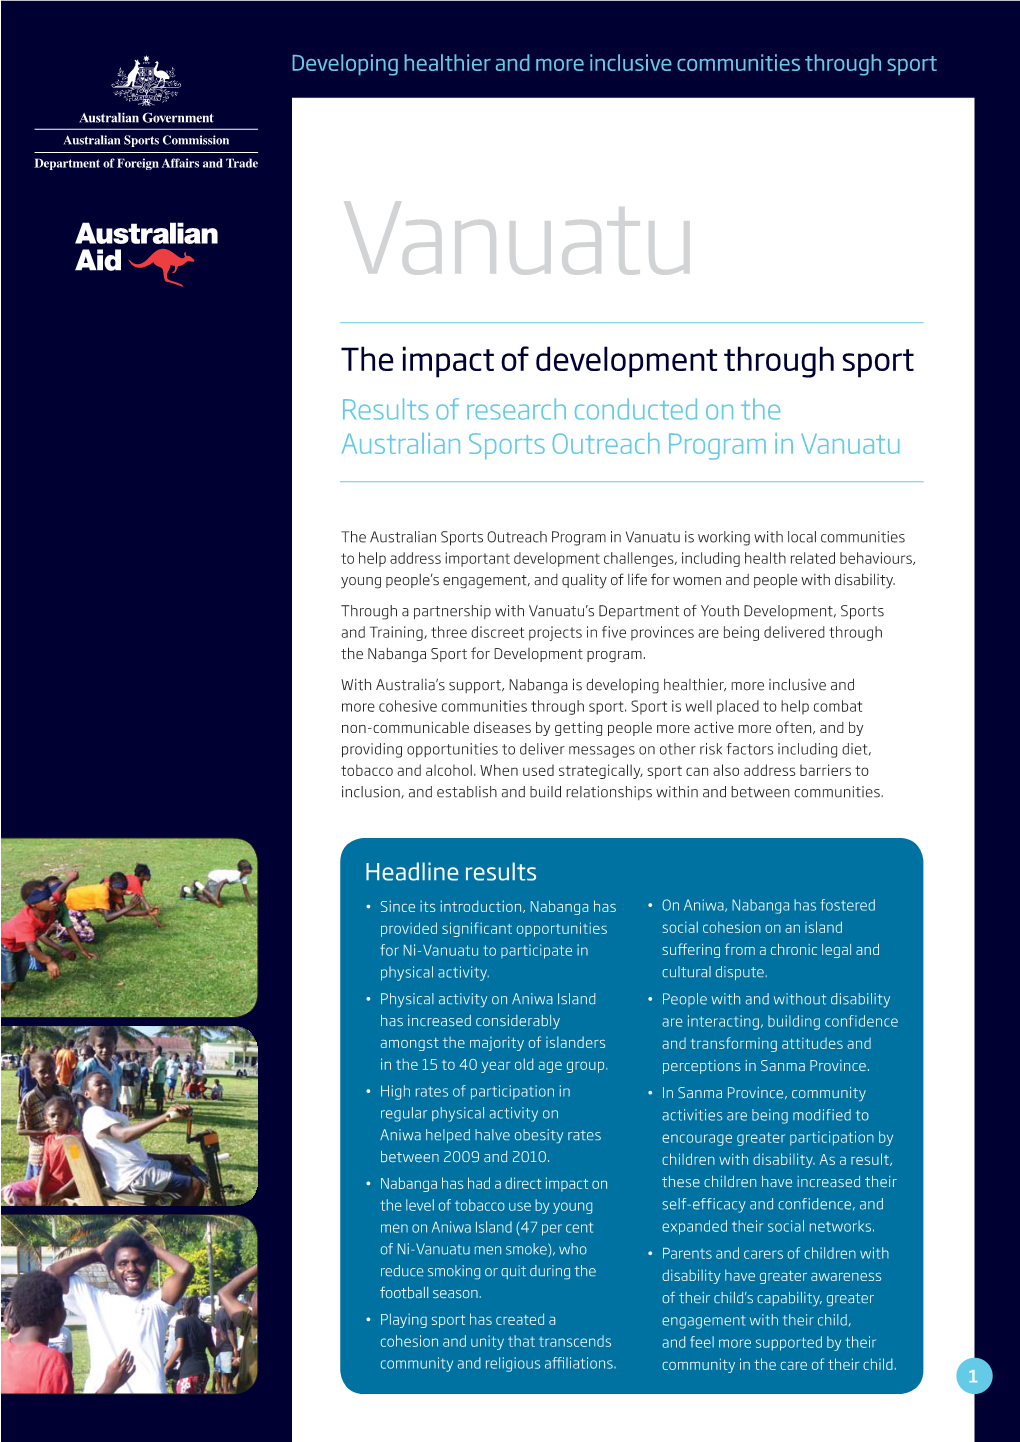 Read the Vanuatu Research Report